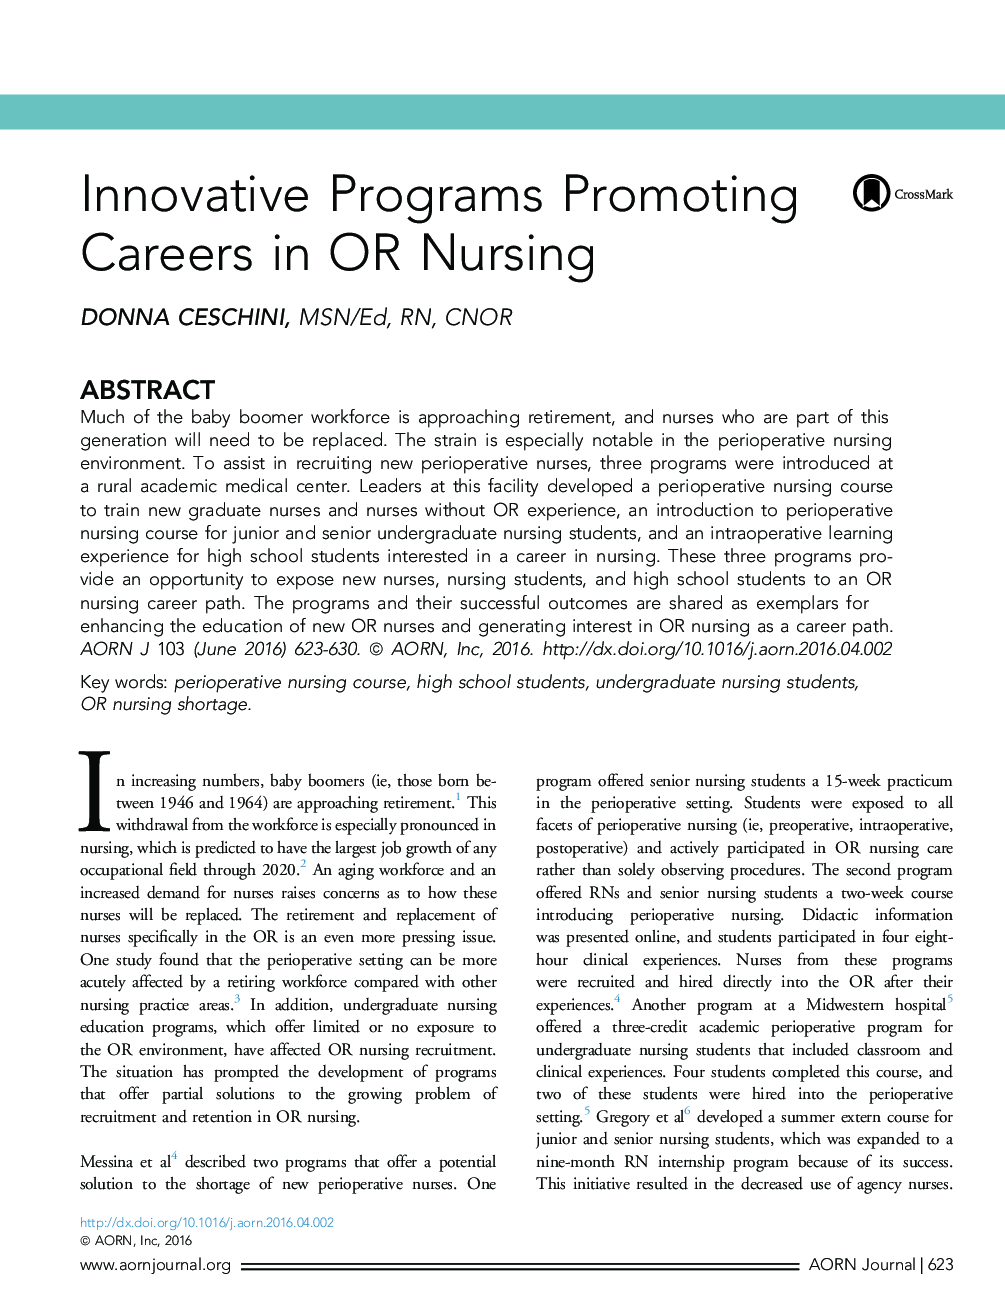 Innovative Programs Promoting Careers in OR Nursing